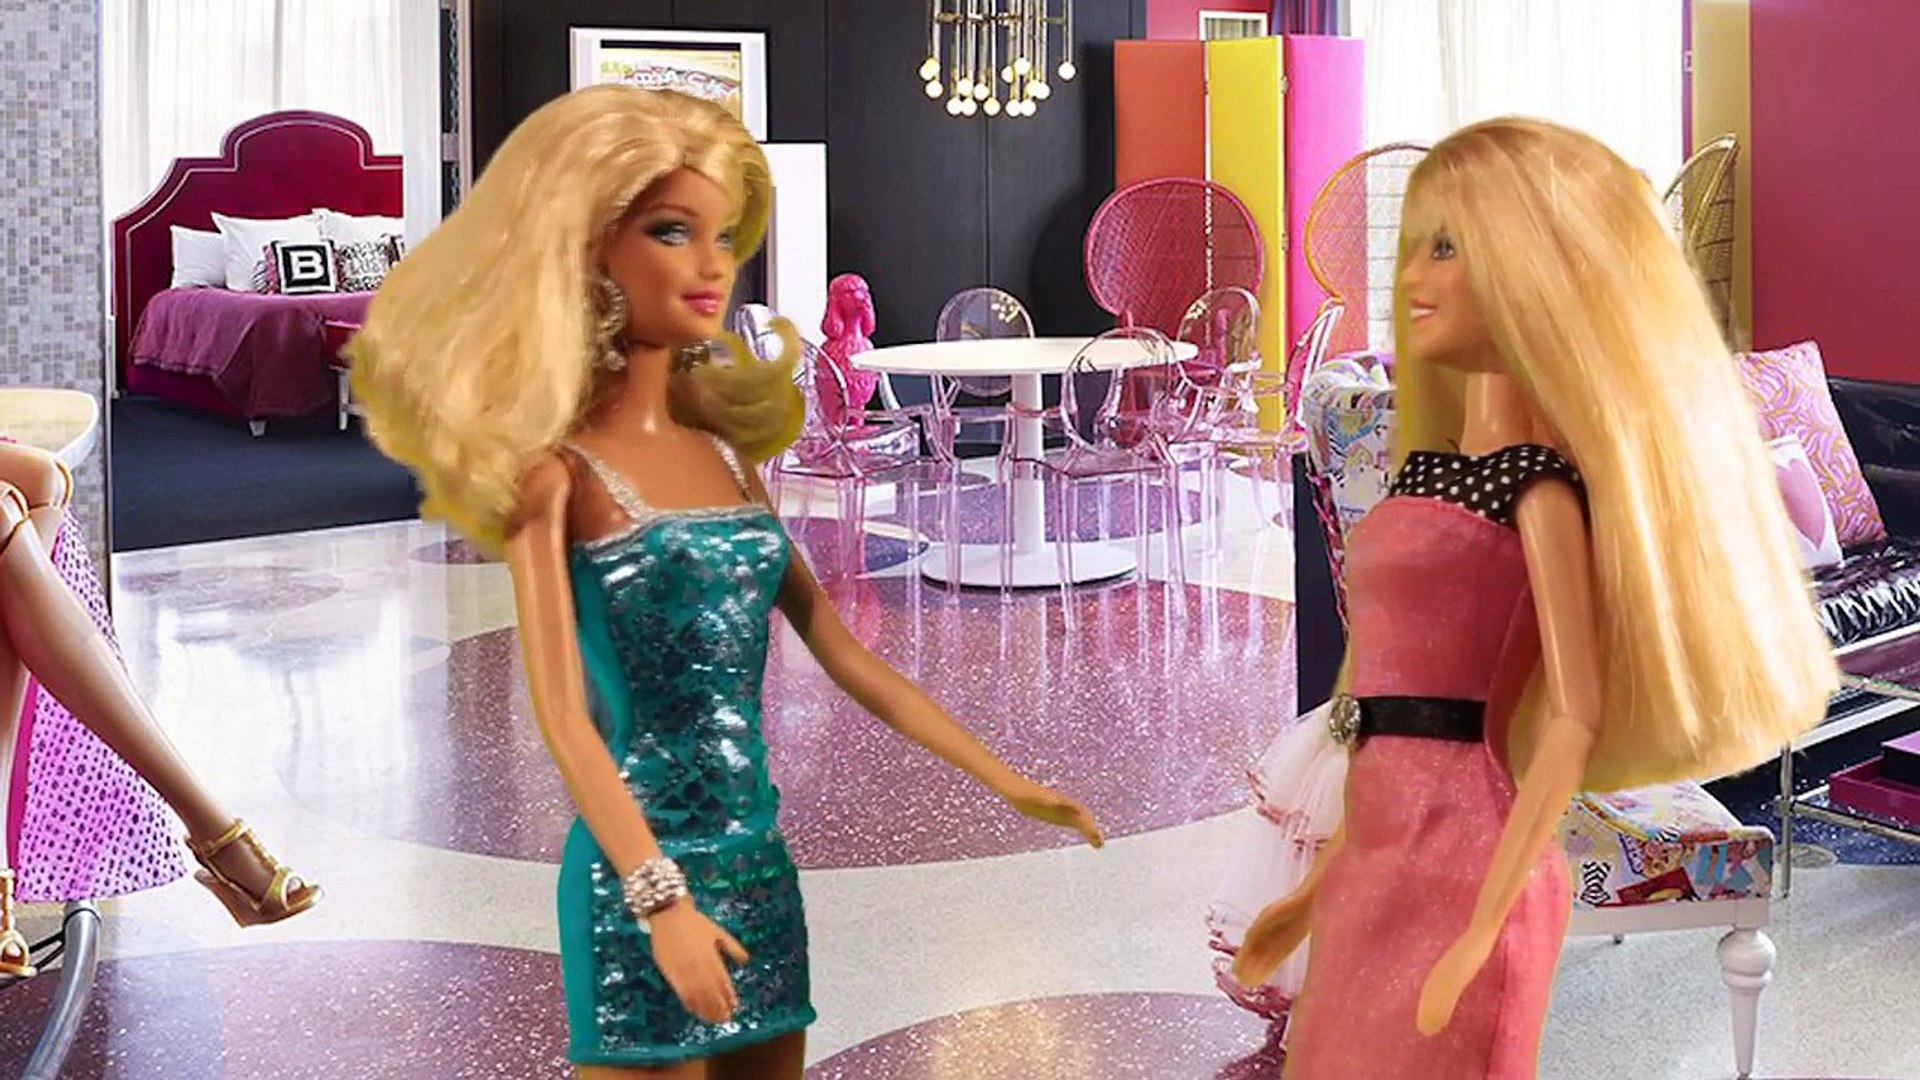 Boneca Barbie Anna Elsa Frozen Novelinha compra roupas moda loja